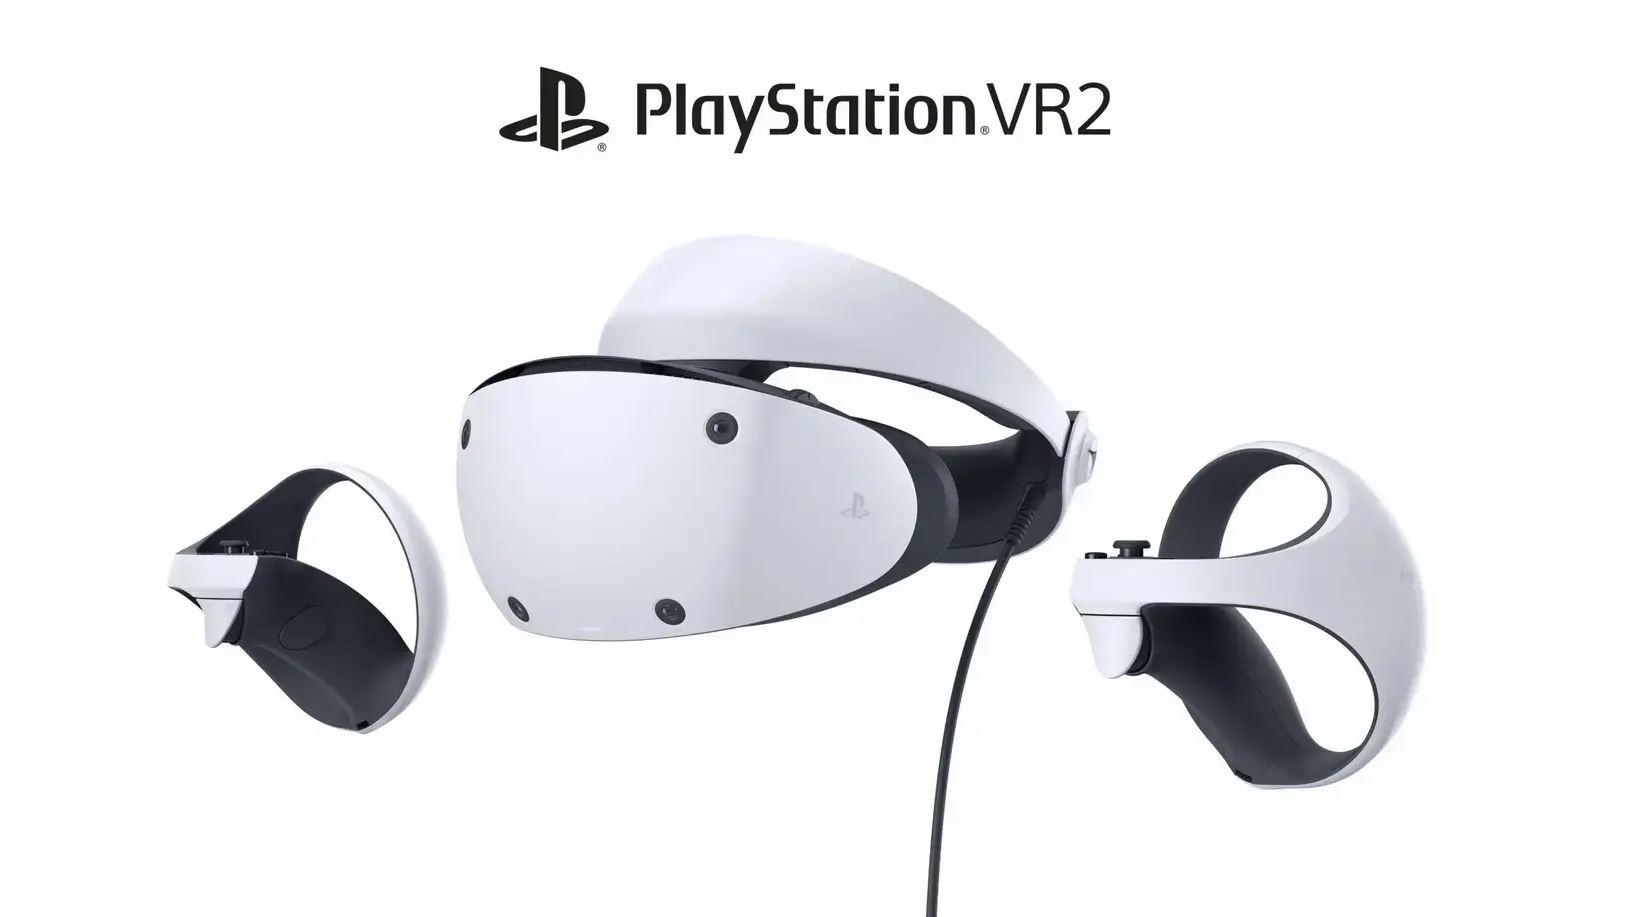 Passend zur PS5: PlayStation VR2 offiziell auf Bildern präsentiert